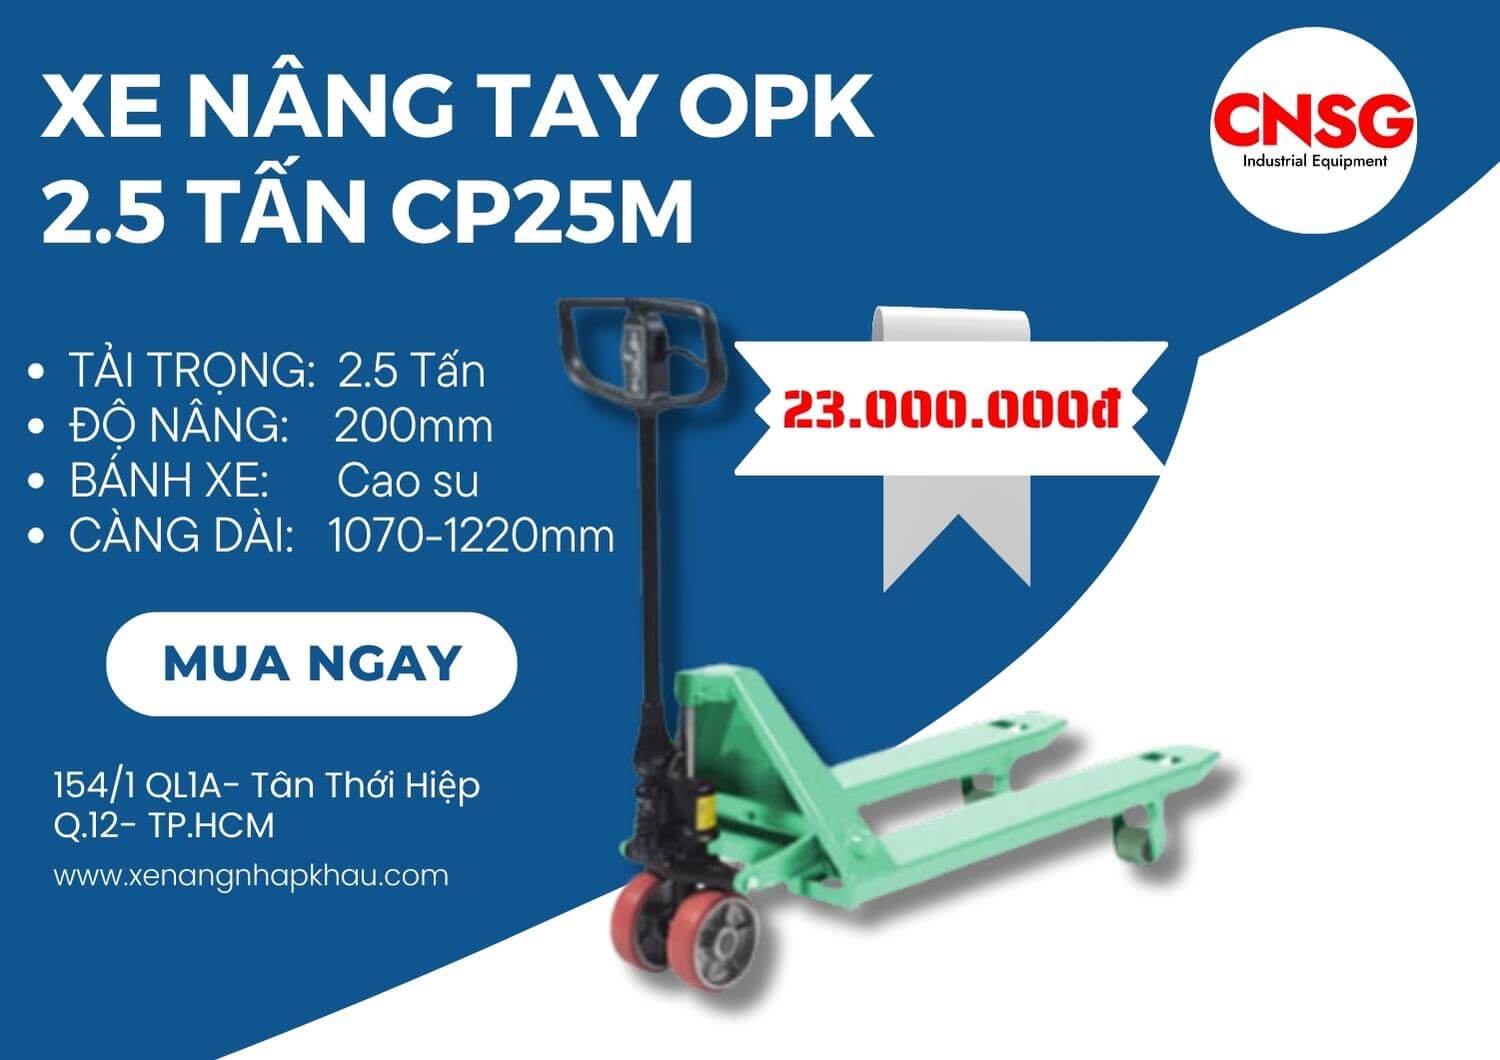 Xe nâng tay OPK 2.5 tấn CP25M